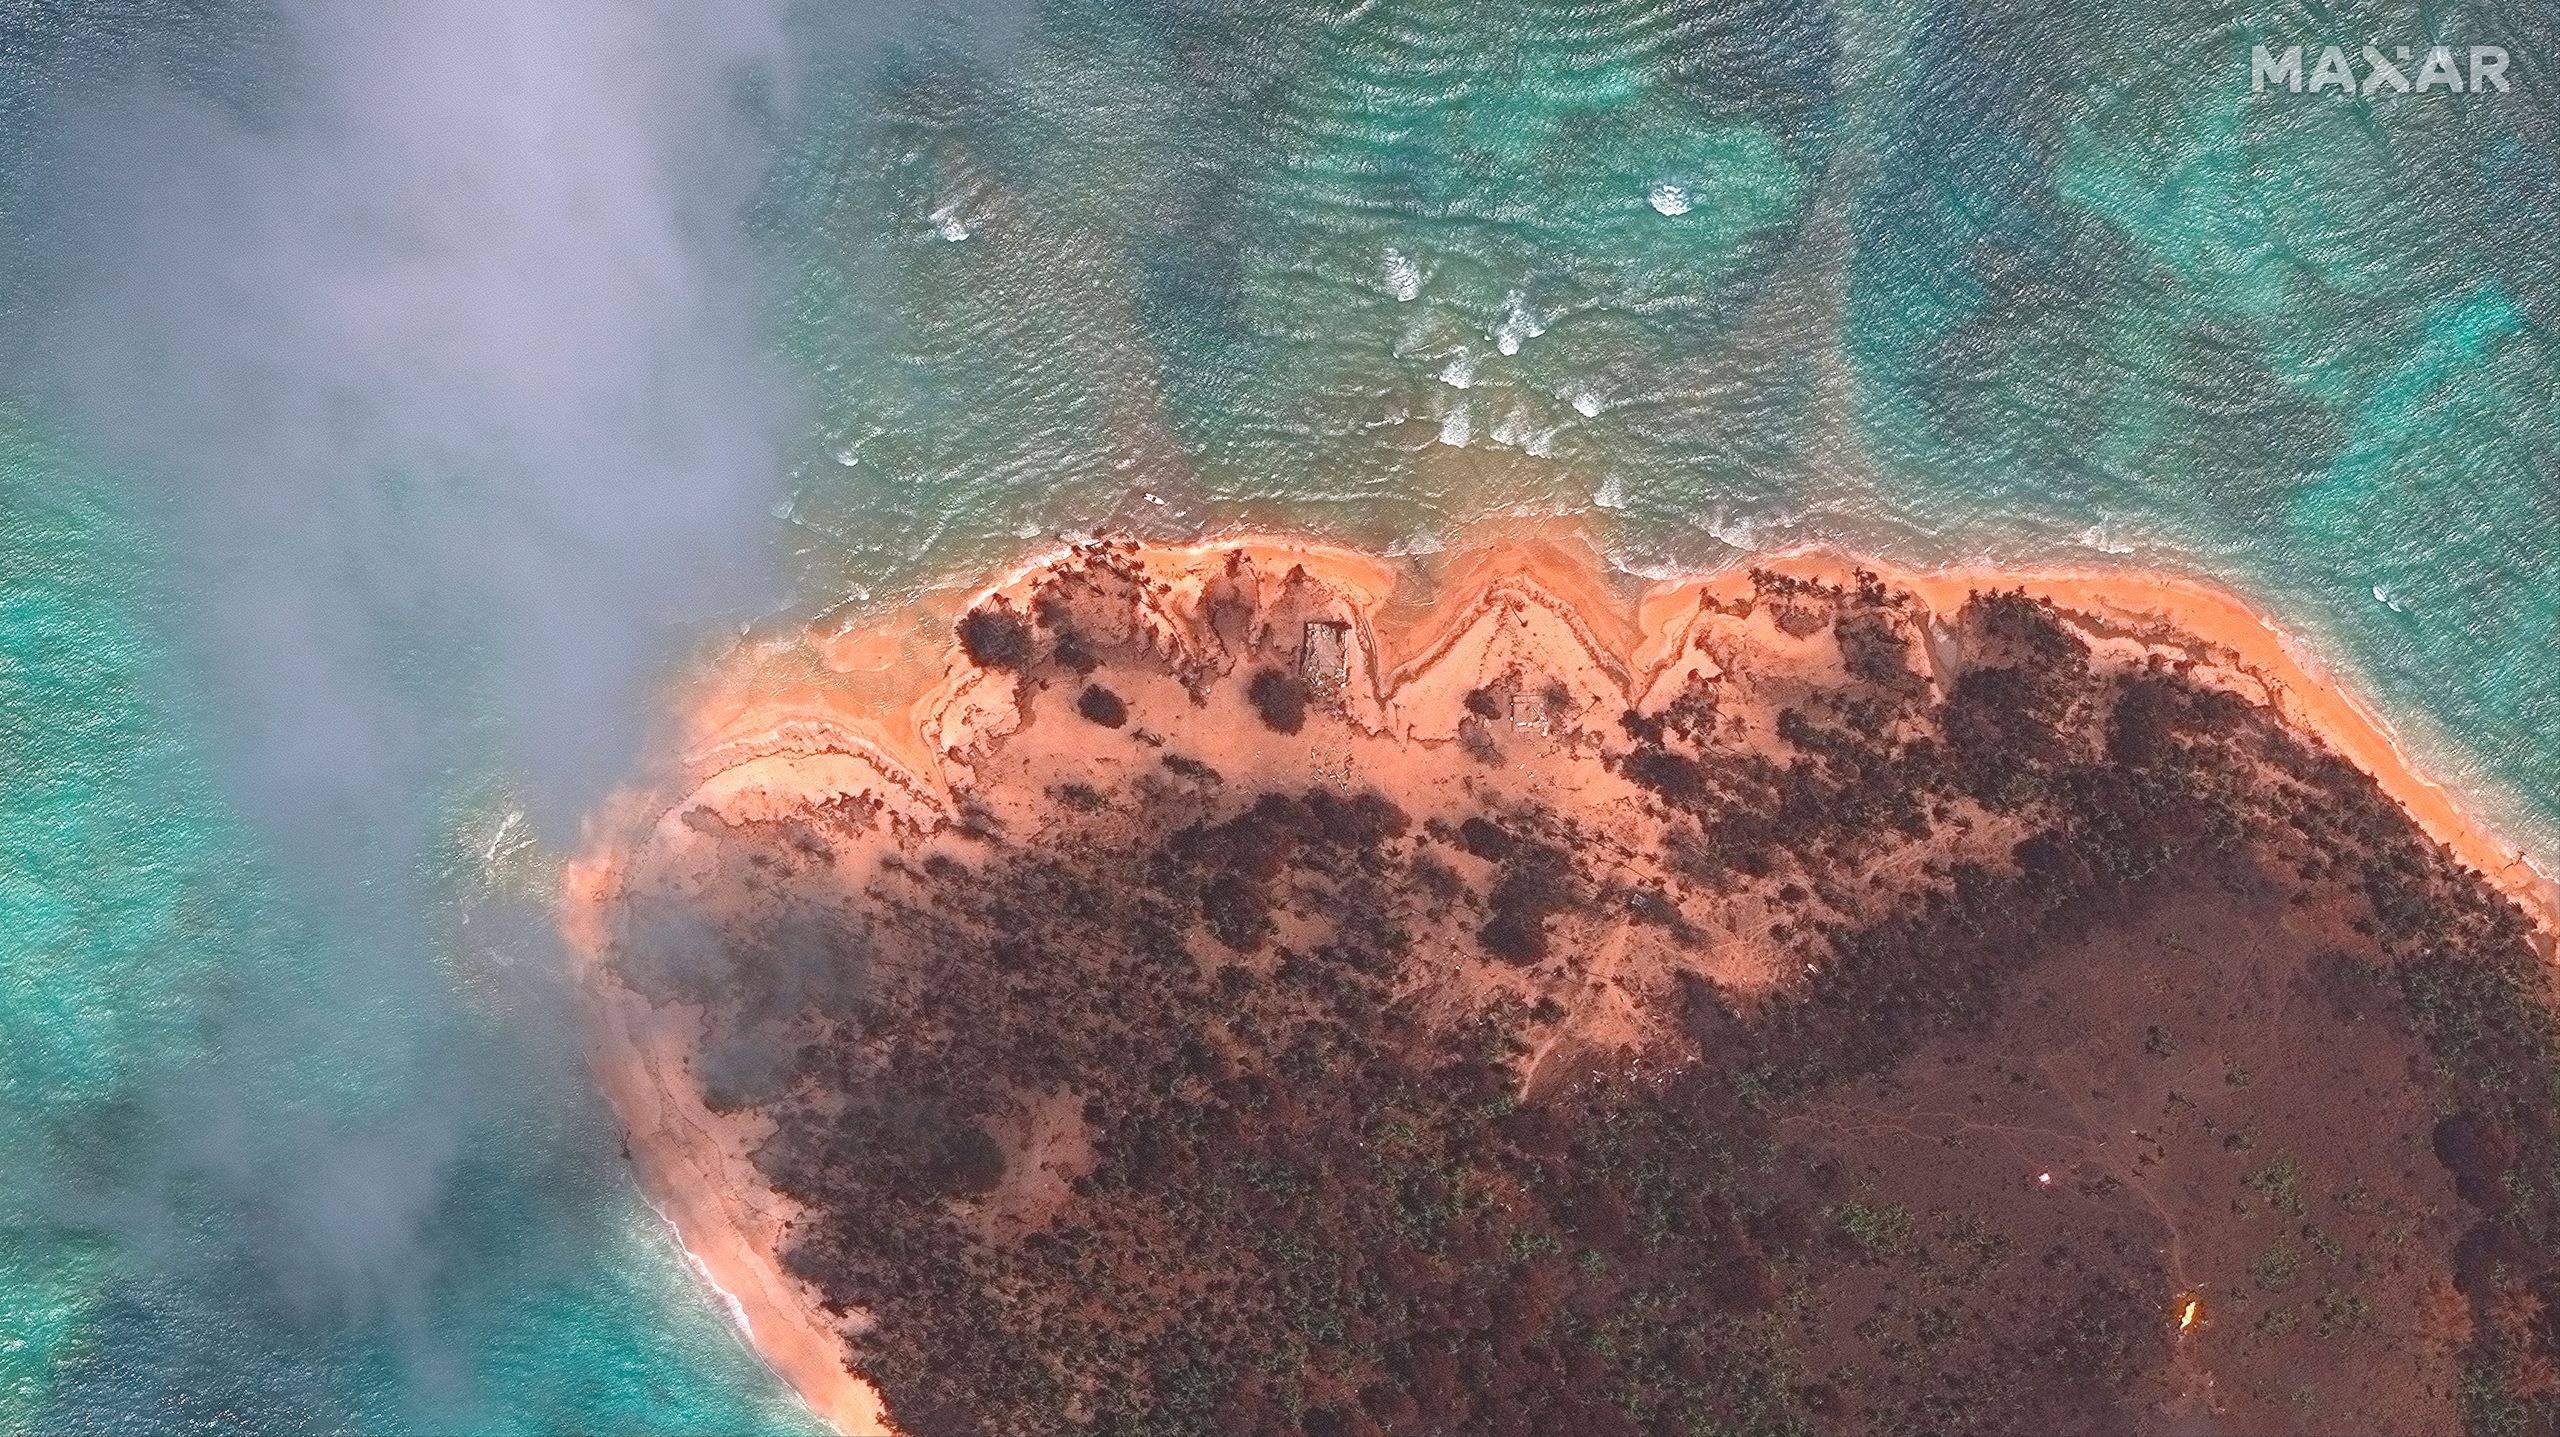 Tonga volcano was ‘hundreds of times’ more powerful than Hiroshima bomb: NASA